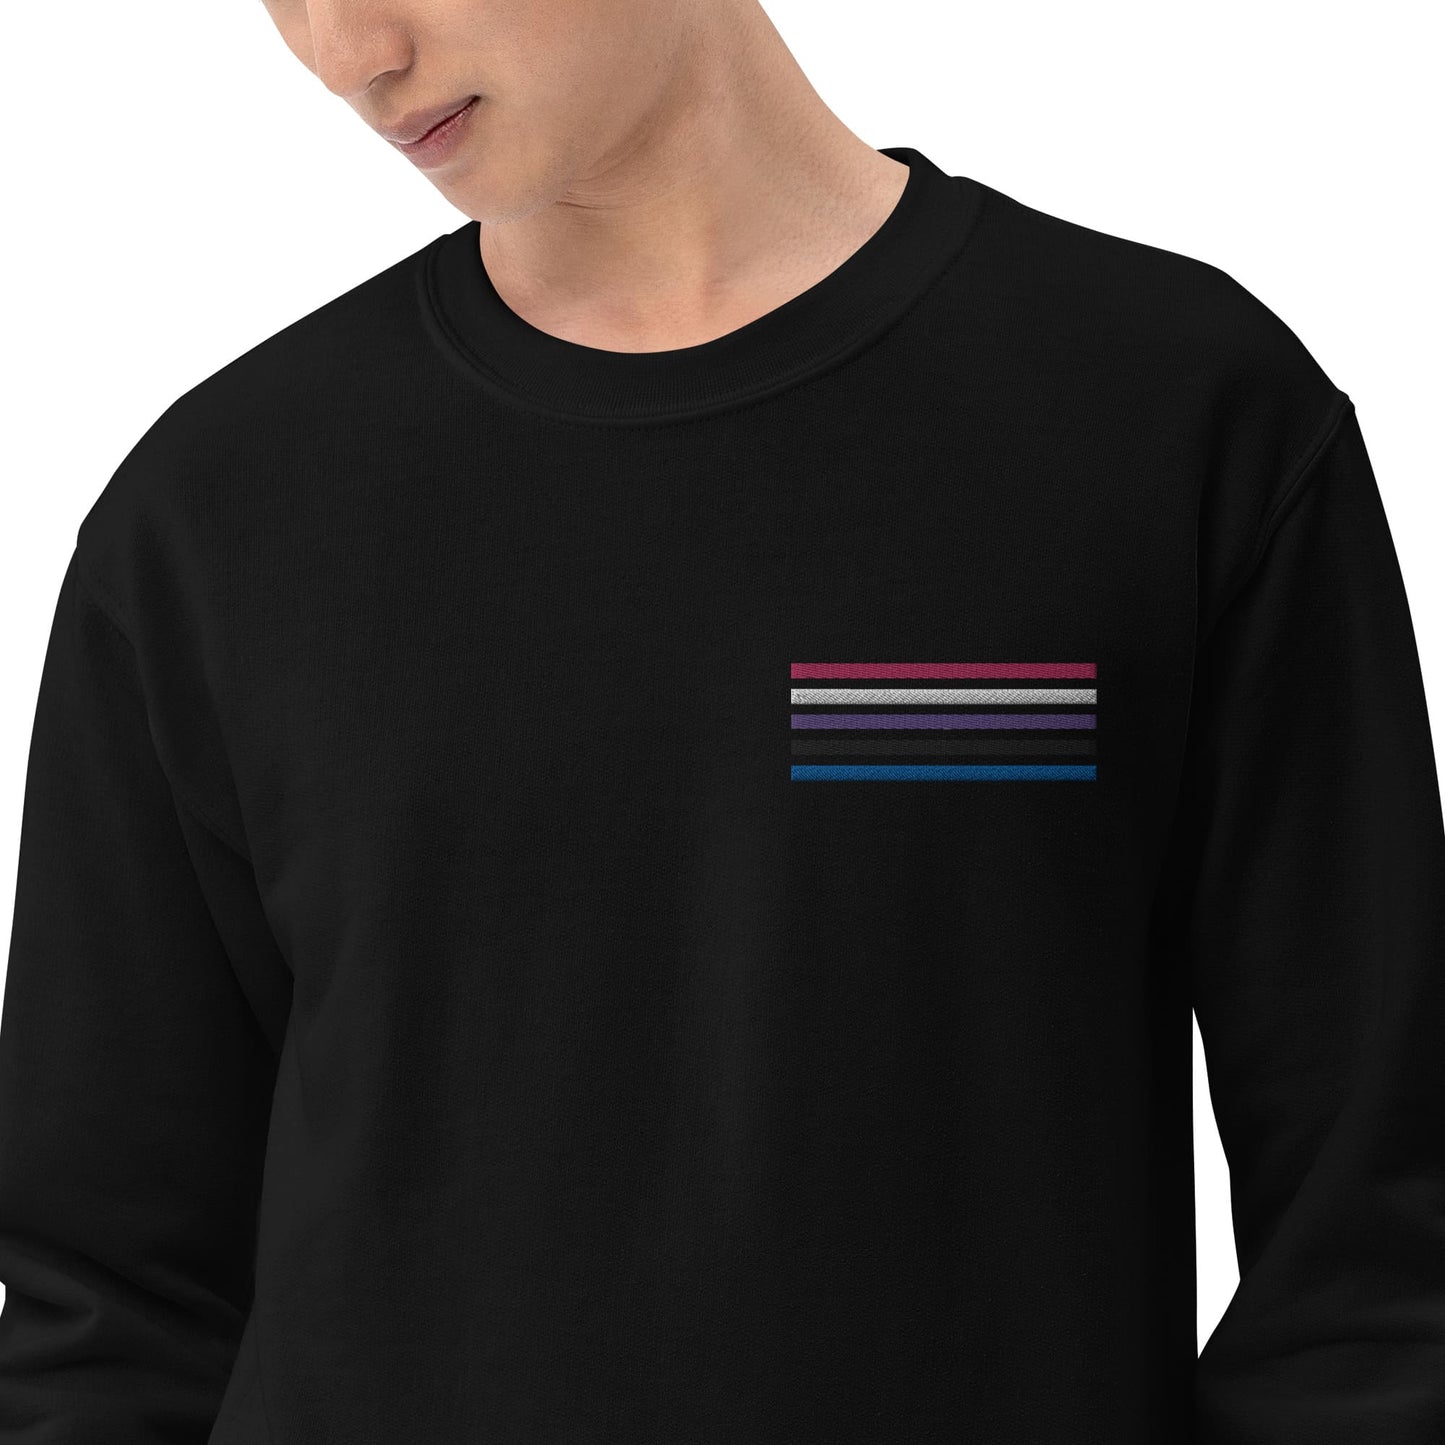 genderfluid sweatshirt, subtle gender fluid pride flag embroidered pocket design sweater, model 1